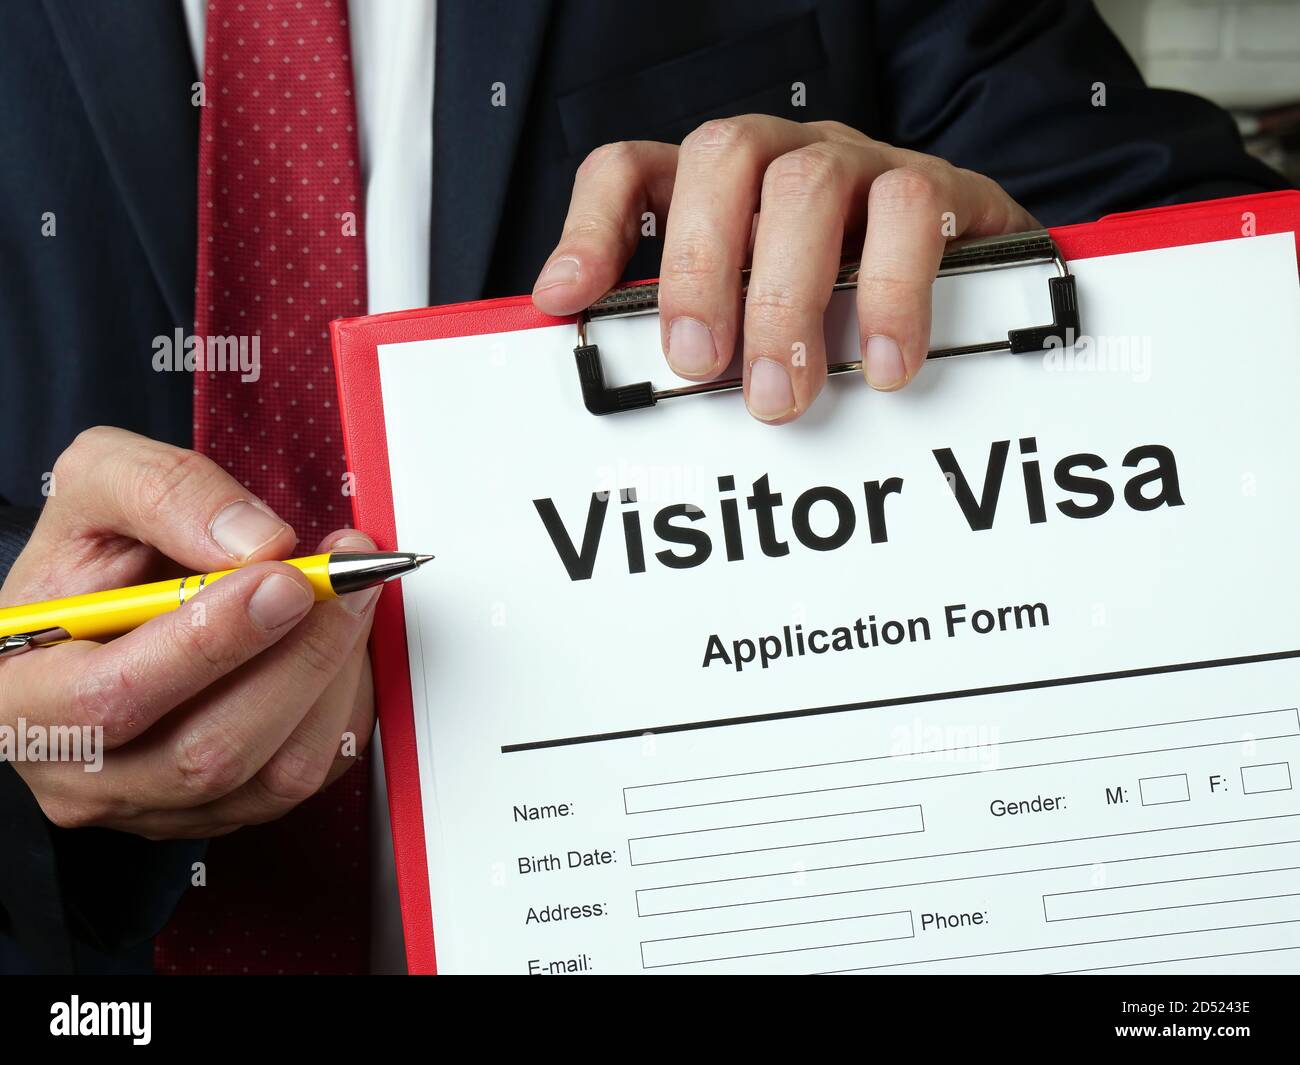 Visitor visa. Uk Standard Visitor visa application. Immigration Solicitor Warwickshire. Immigration Solicitor Oxfordshire.